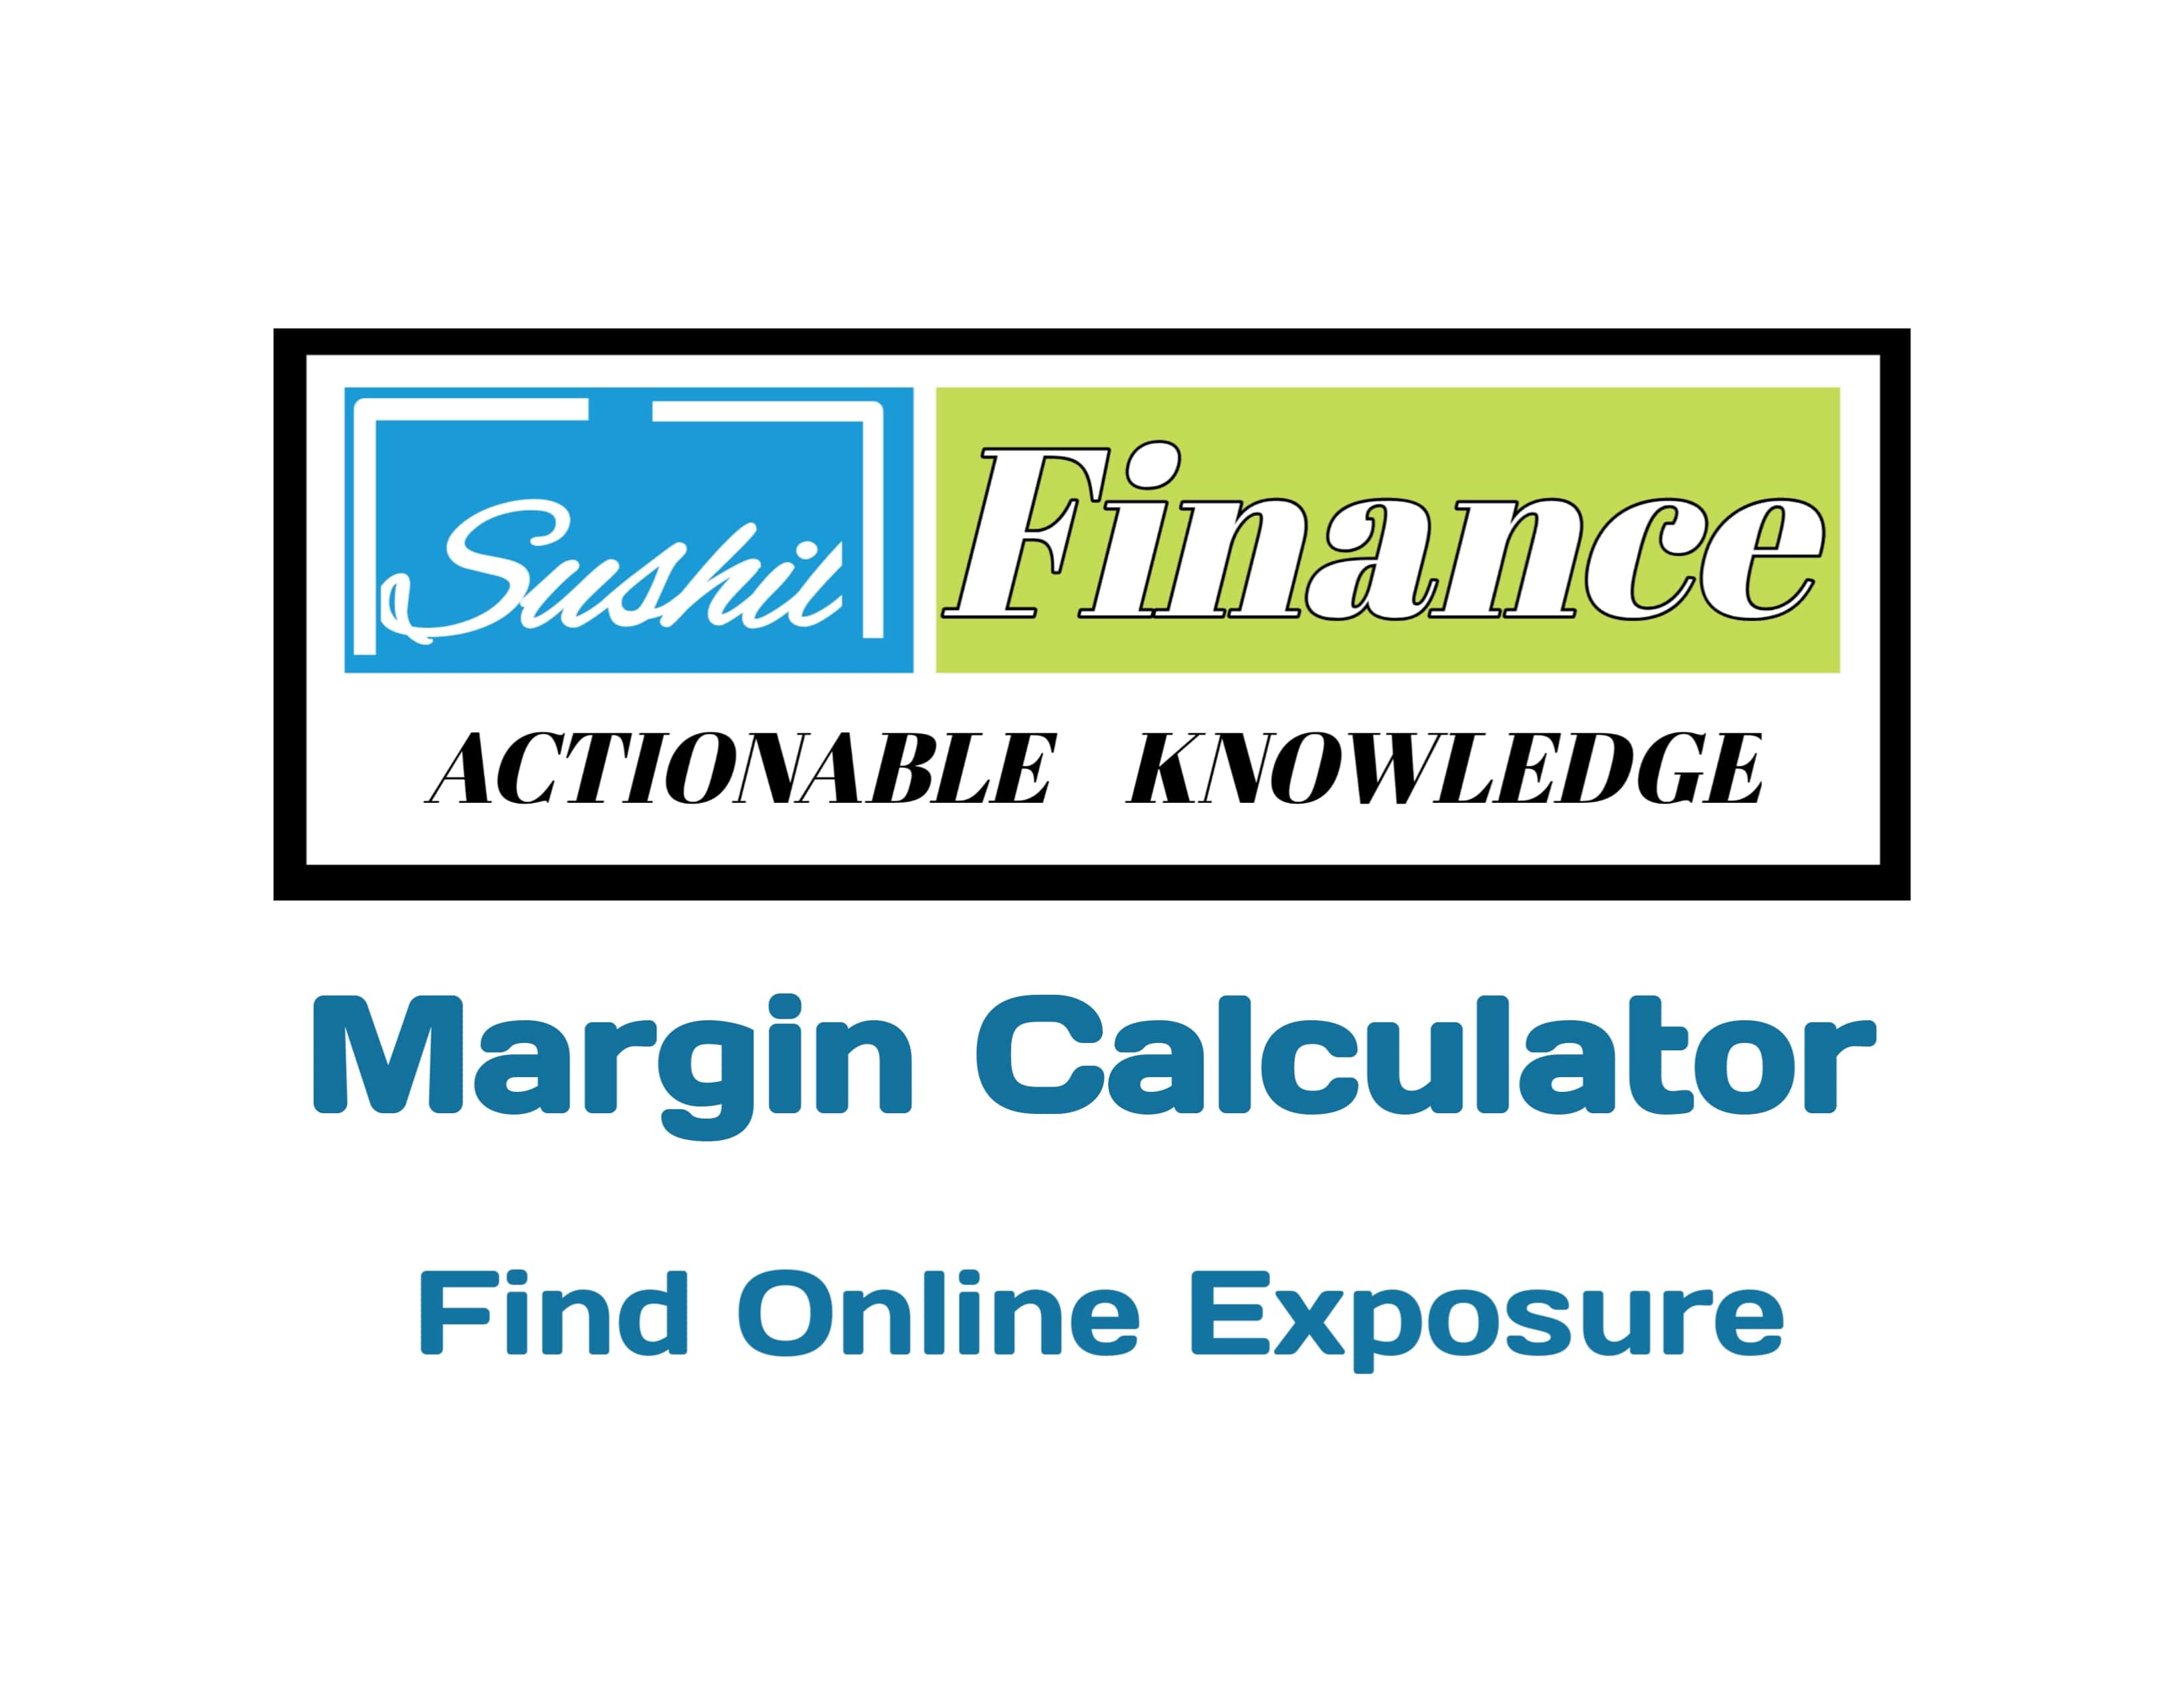 Sushil Finance Margin Calculator